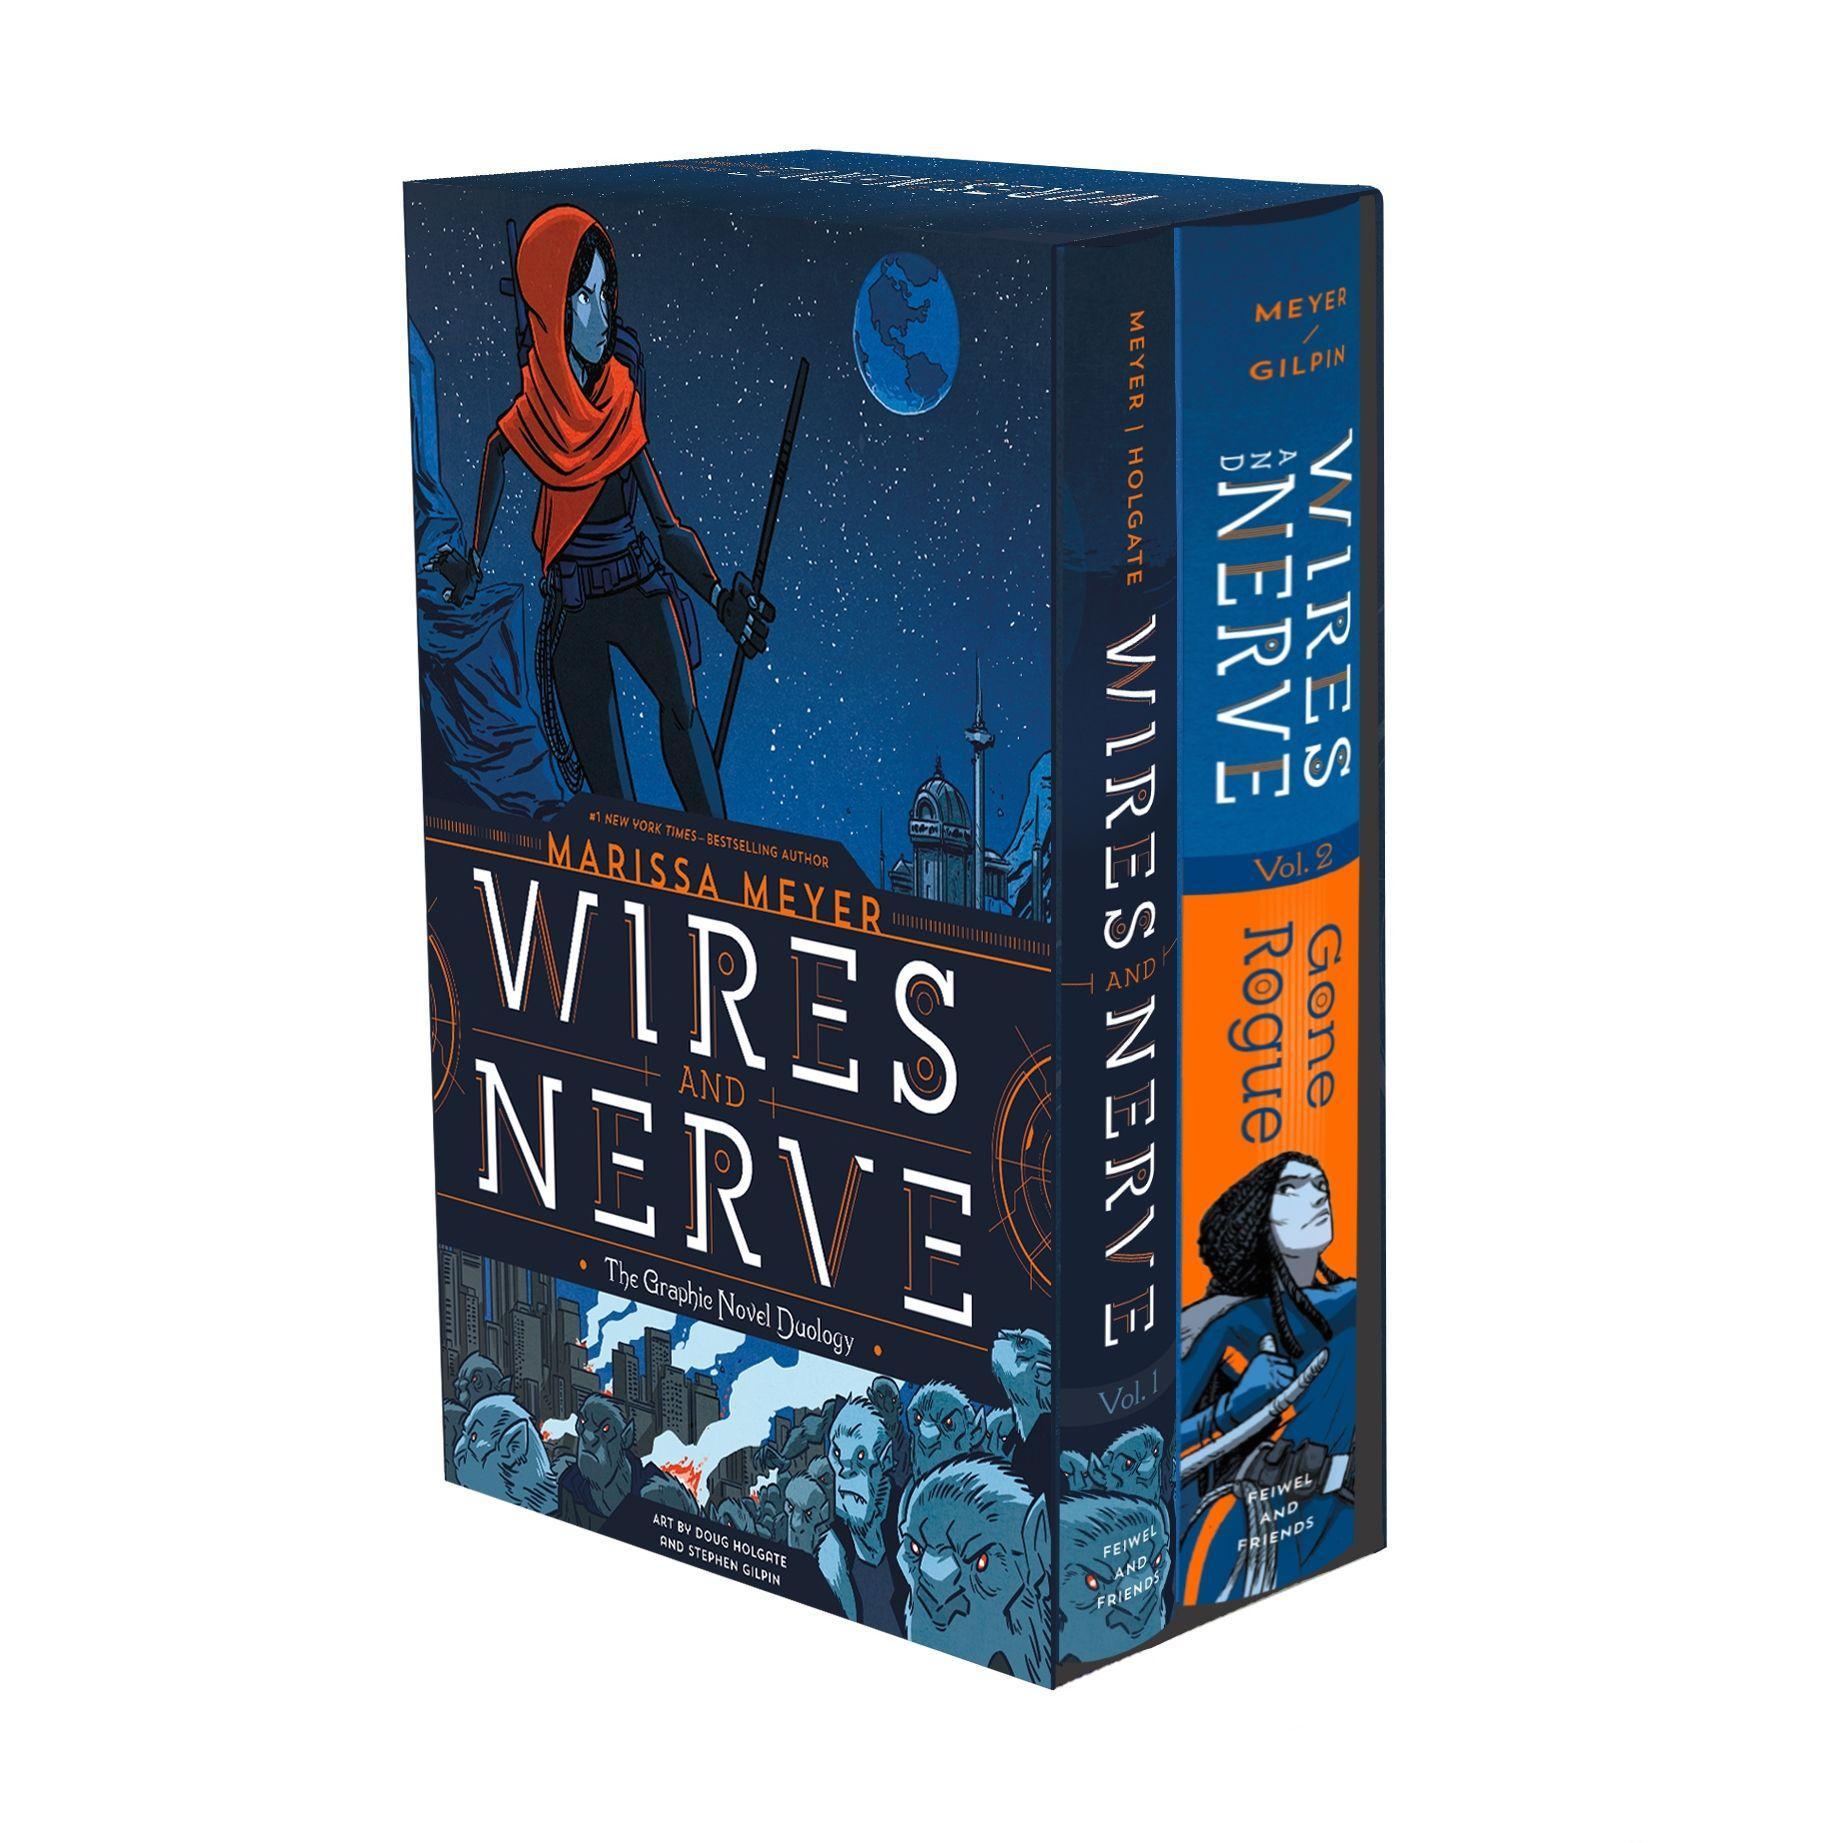 Wires and Nerve: The Graphic Novel Duology Boxed Set / Marissa Meyer / Taschenbuch / Wires and Nerve / Kartoniert / Broschiert / Englisch / 2019 / Square Fish / EAN 9781250211811 - Meyer, Marissa